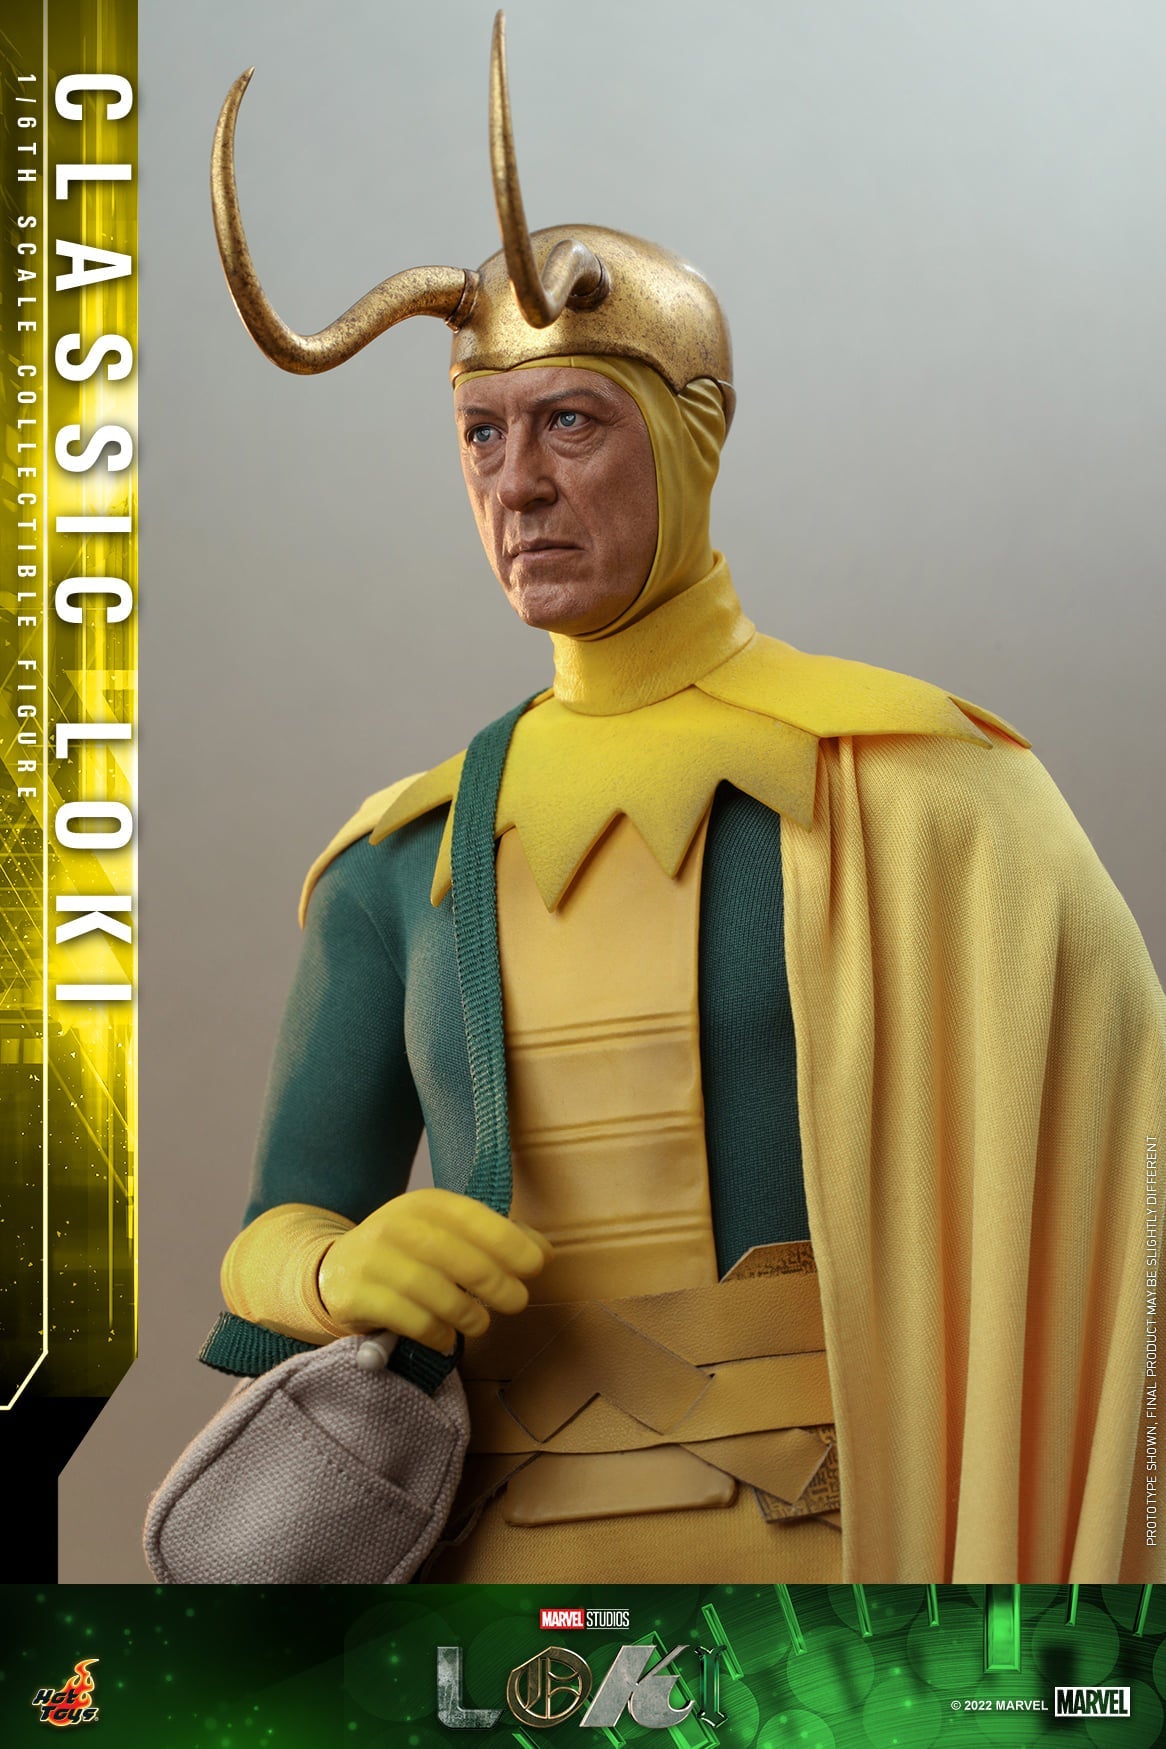 Pedido Figura Classic Loki - Serie Loki marca Hot Toys TMS073 escala 1/6